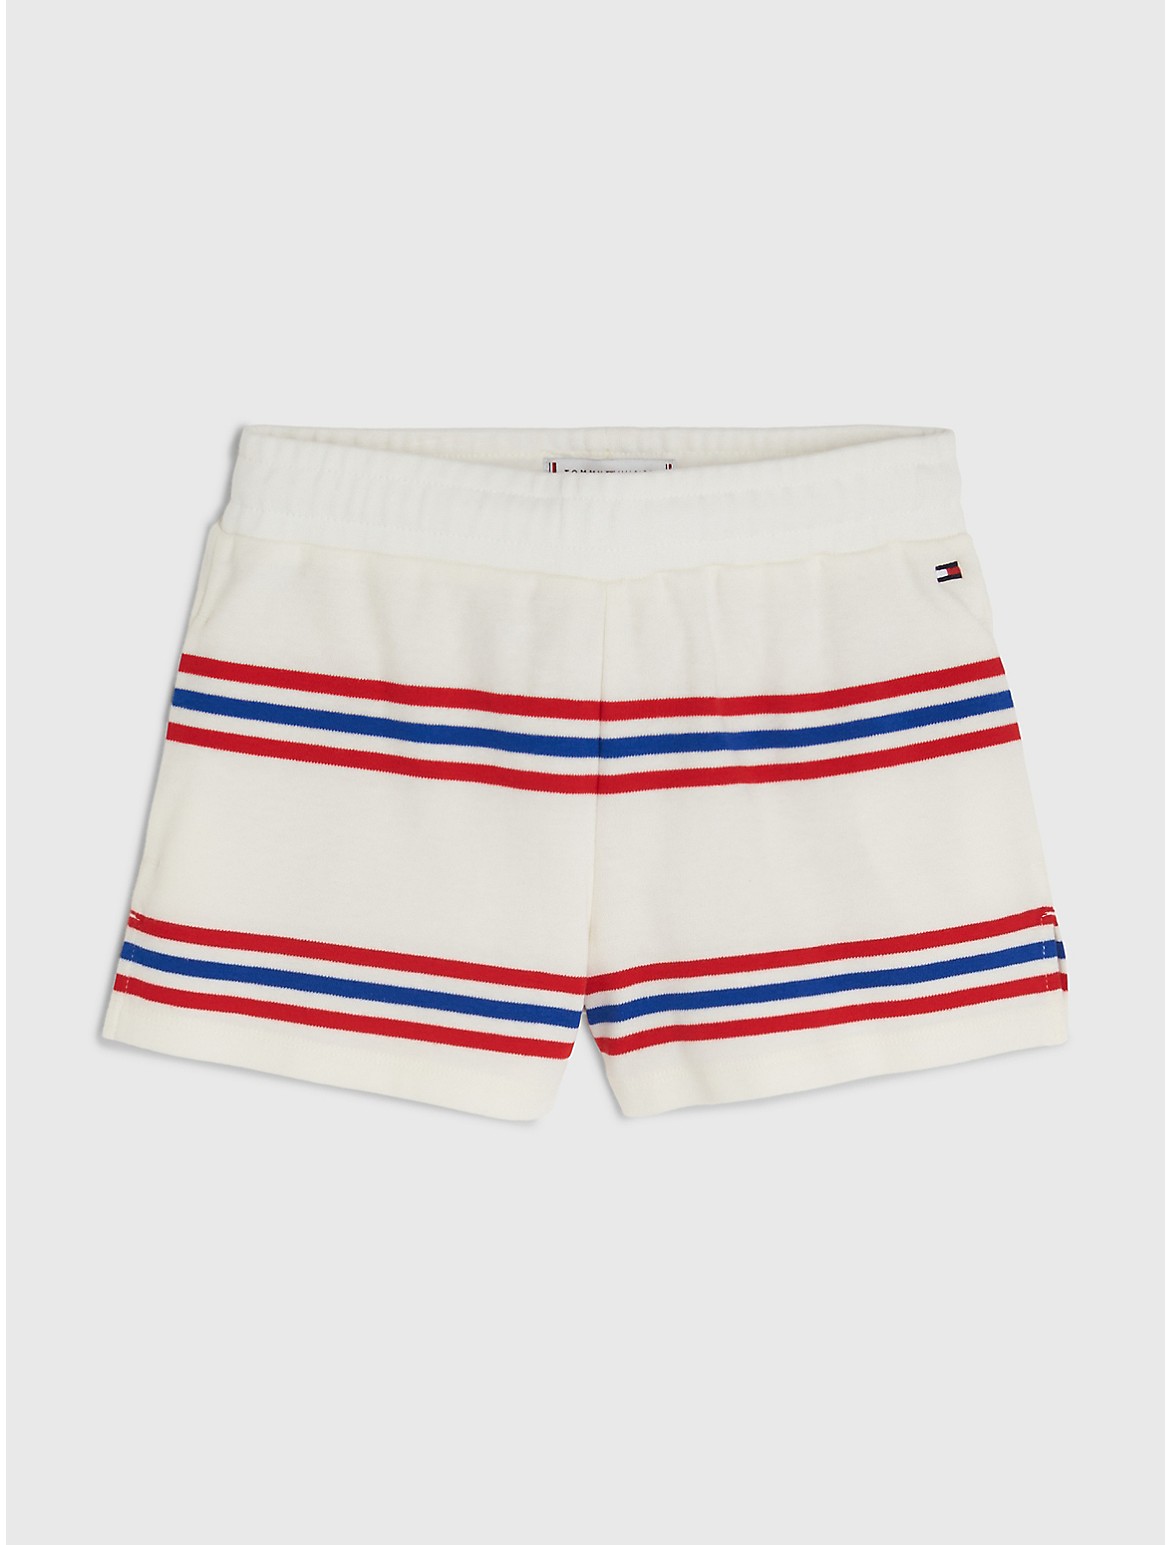 Tommy Hilfiger Girls' Kids' Varsity Stripe Short - White - 8